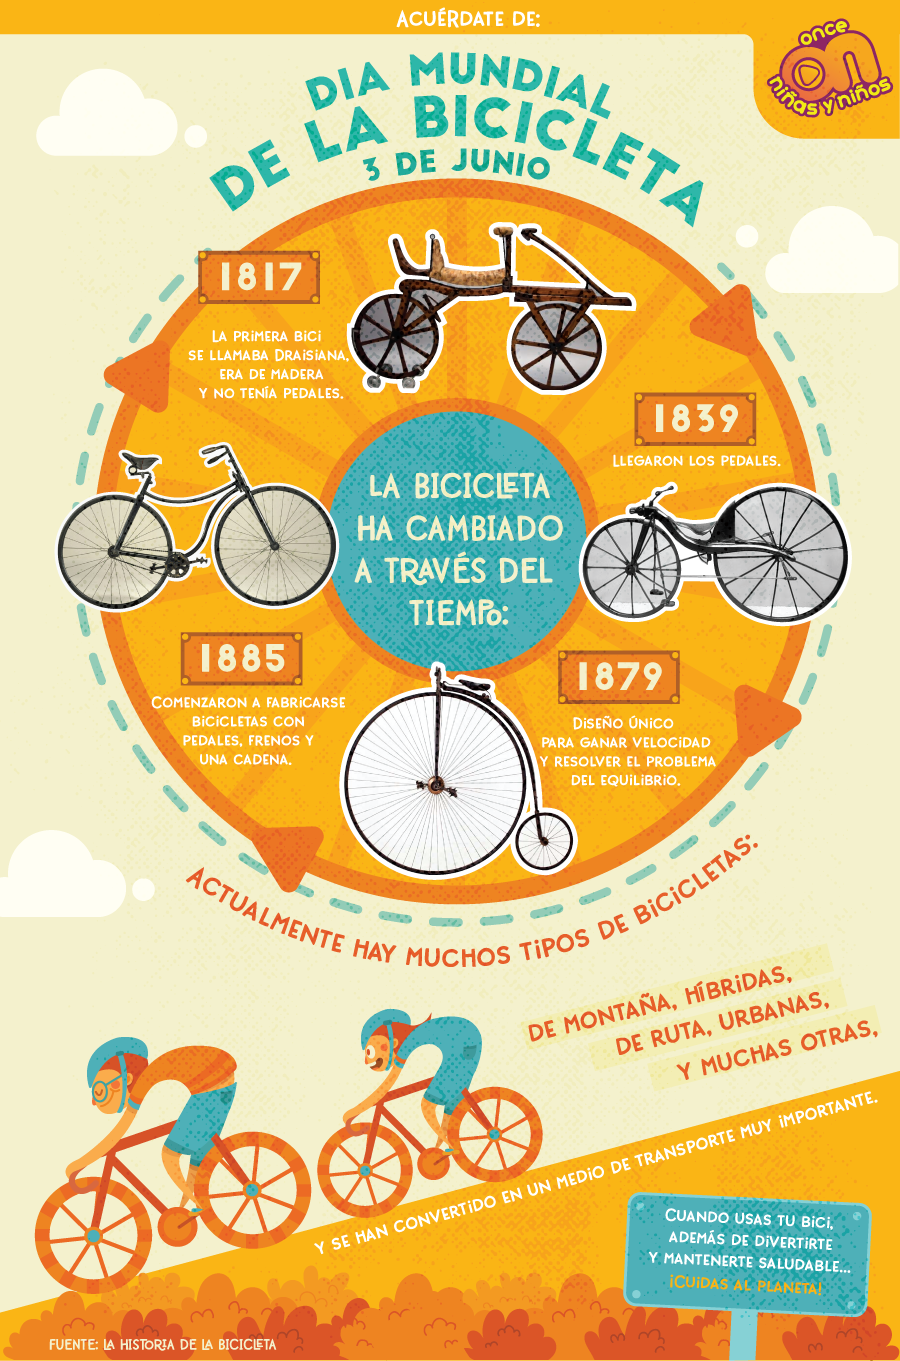 Acuérdate de...
Día Mundial de la Bicicleta 
3 de junio
Once Niñas y Niños